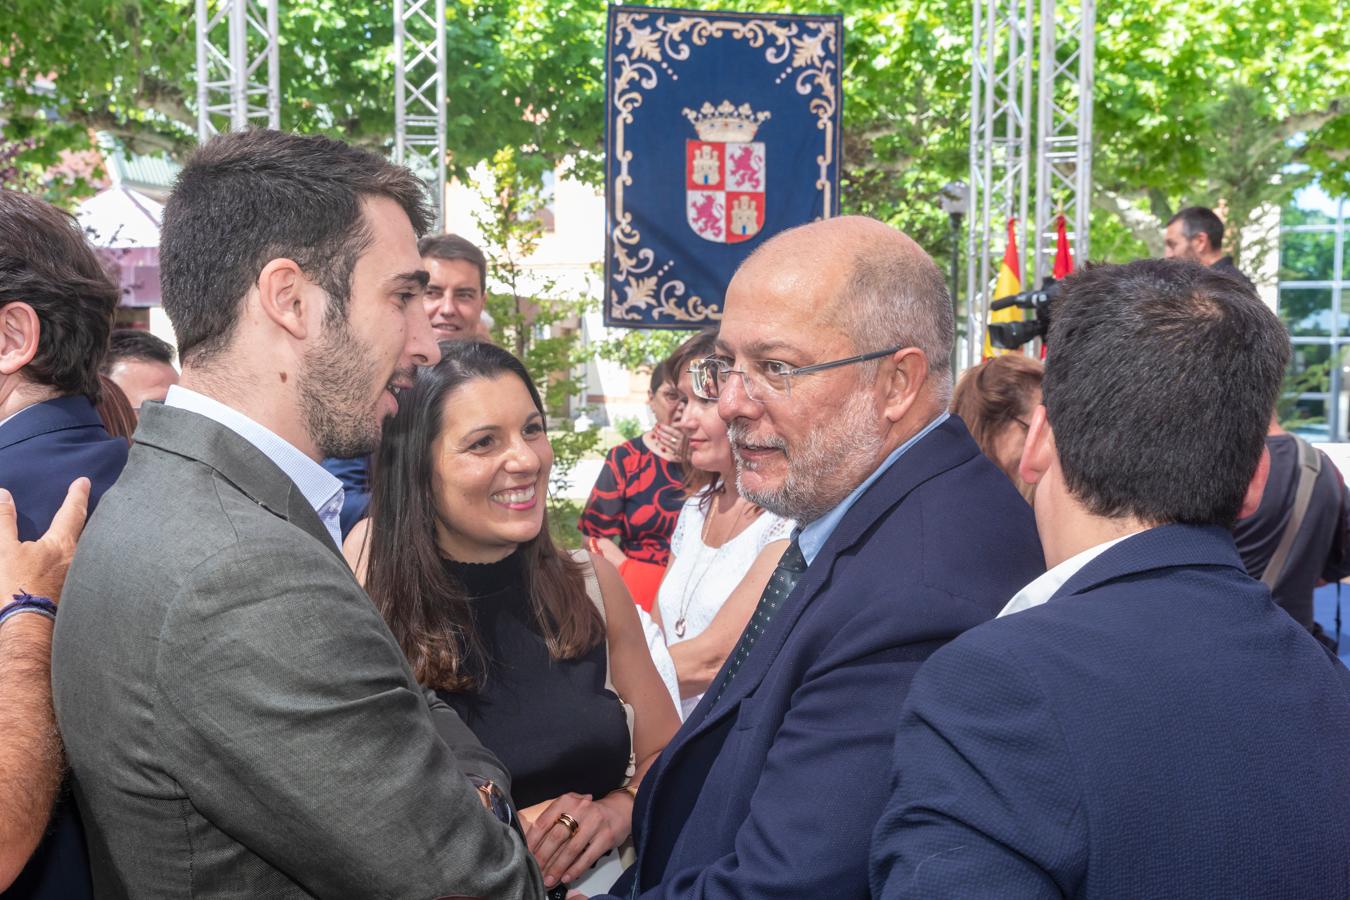 Familiares, amigos y exconsejeros acompañan al nuevo Ejecutivo de Castilla y León en su toma de posesión